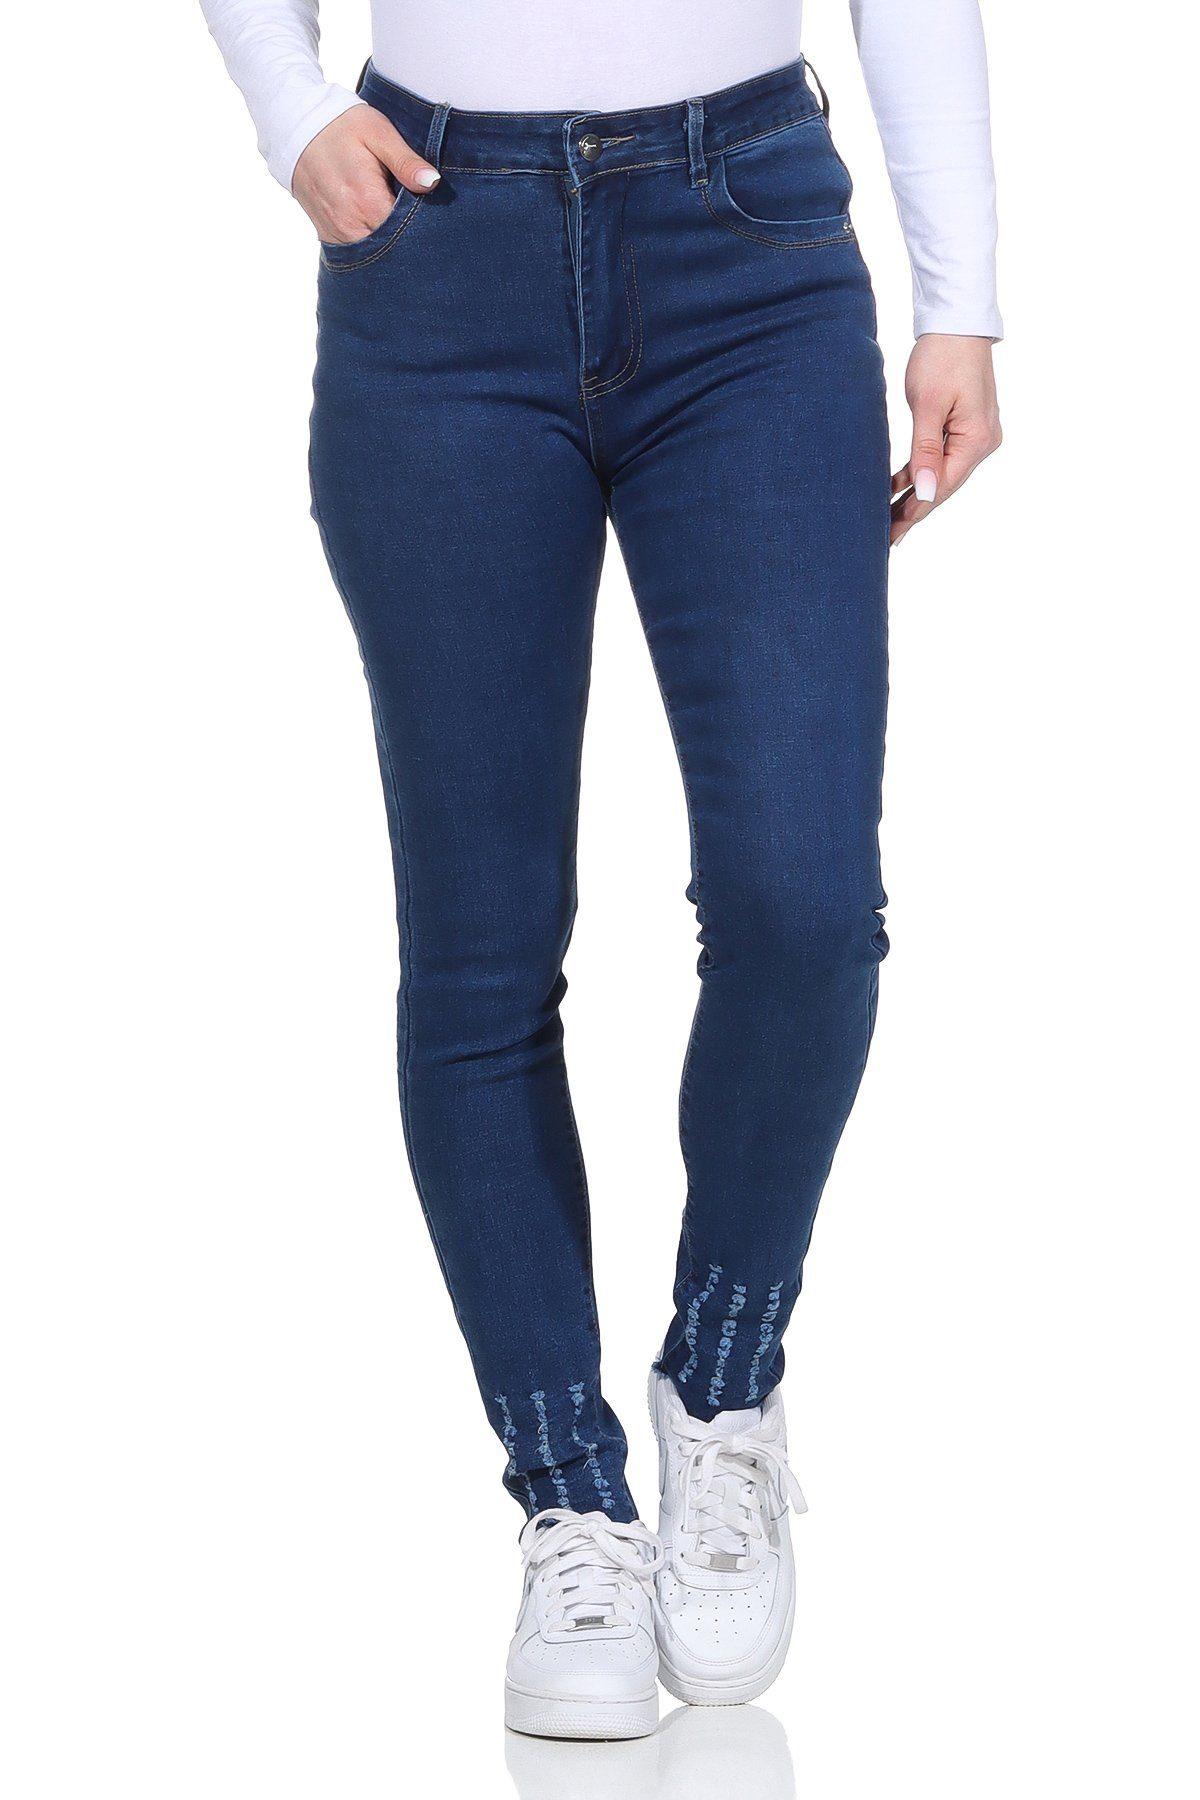 Aurela Damenmode 5-Pocket-Jeans »Jeanshosen für Damen Stretch Jeans  Destroyed Look« moderner Distressed Look online kaufen | OTTO